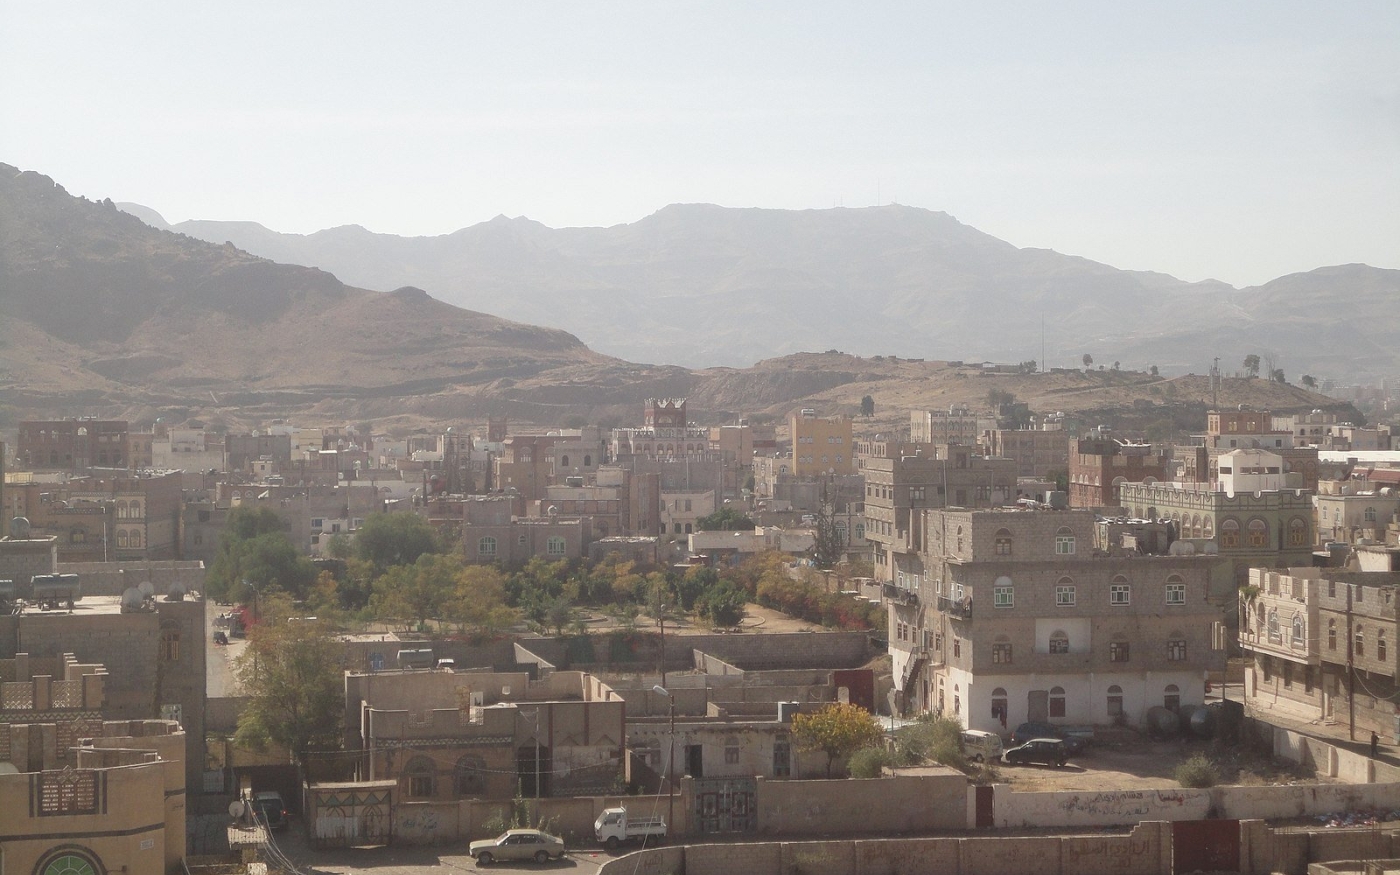 Jabal an-Nabi Shu’ayb, la plus haute montagne du Yémen et de la péninsule Arabique, peut être vue en arrière-plan (Wikimedia Commons)